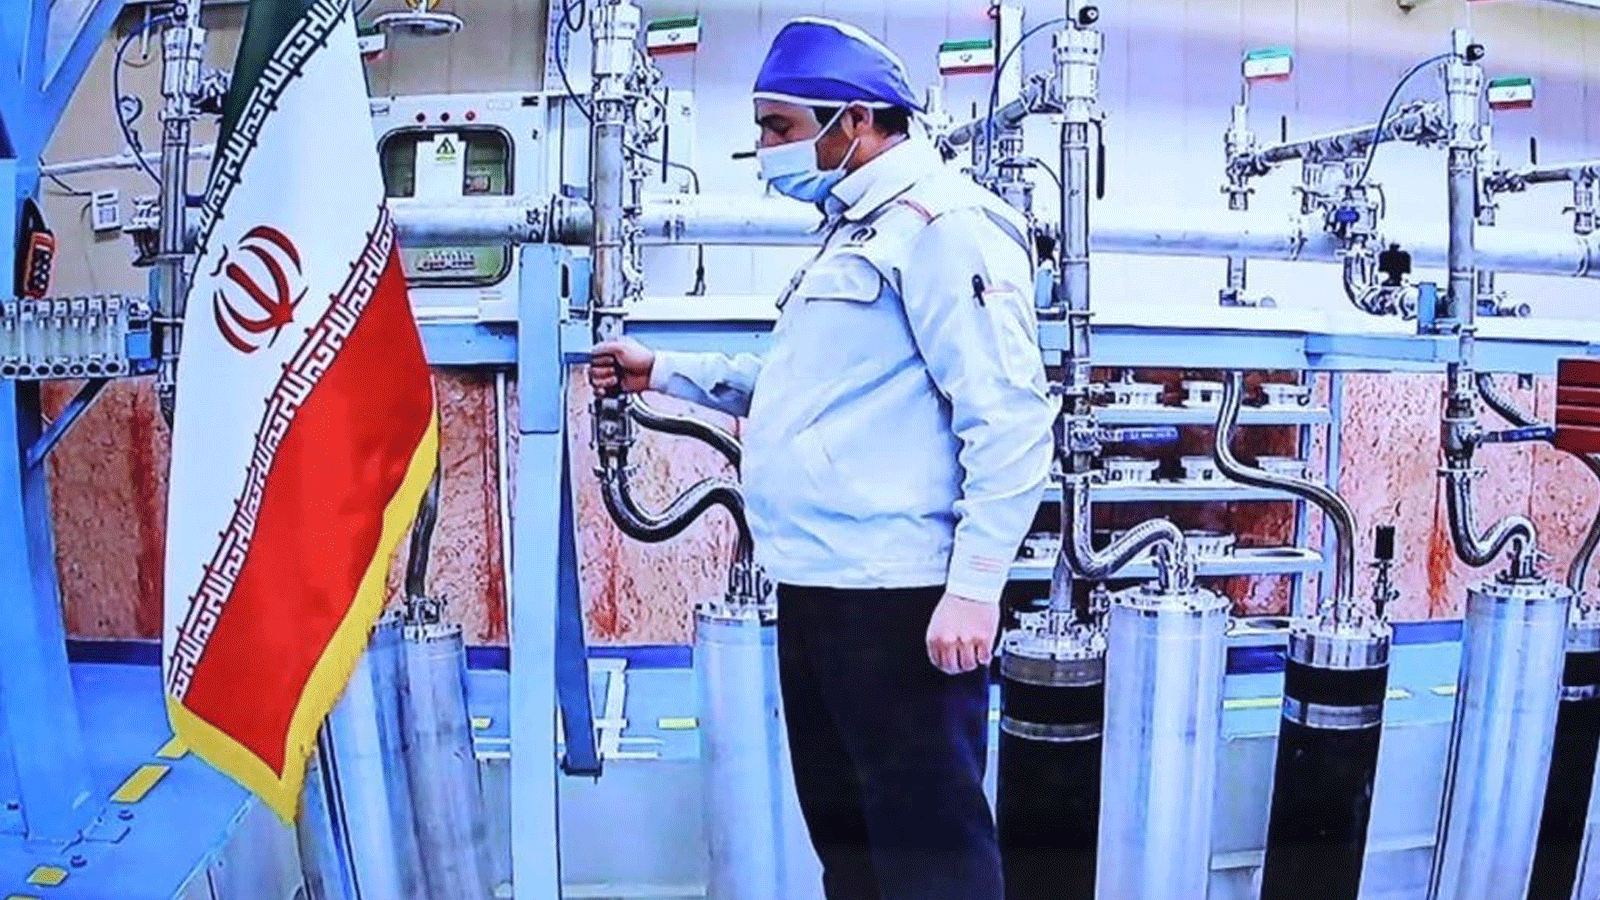 صورة لشاشة مؤتمر بالفيديو تُظهر محرّكا داخل مصنع نطنز لتخصيب اليورانيوم في إيران، قدمها المكتب الرئاسي الإيراني في 10 أبريل/ نيسان 2021 